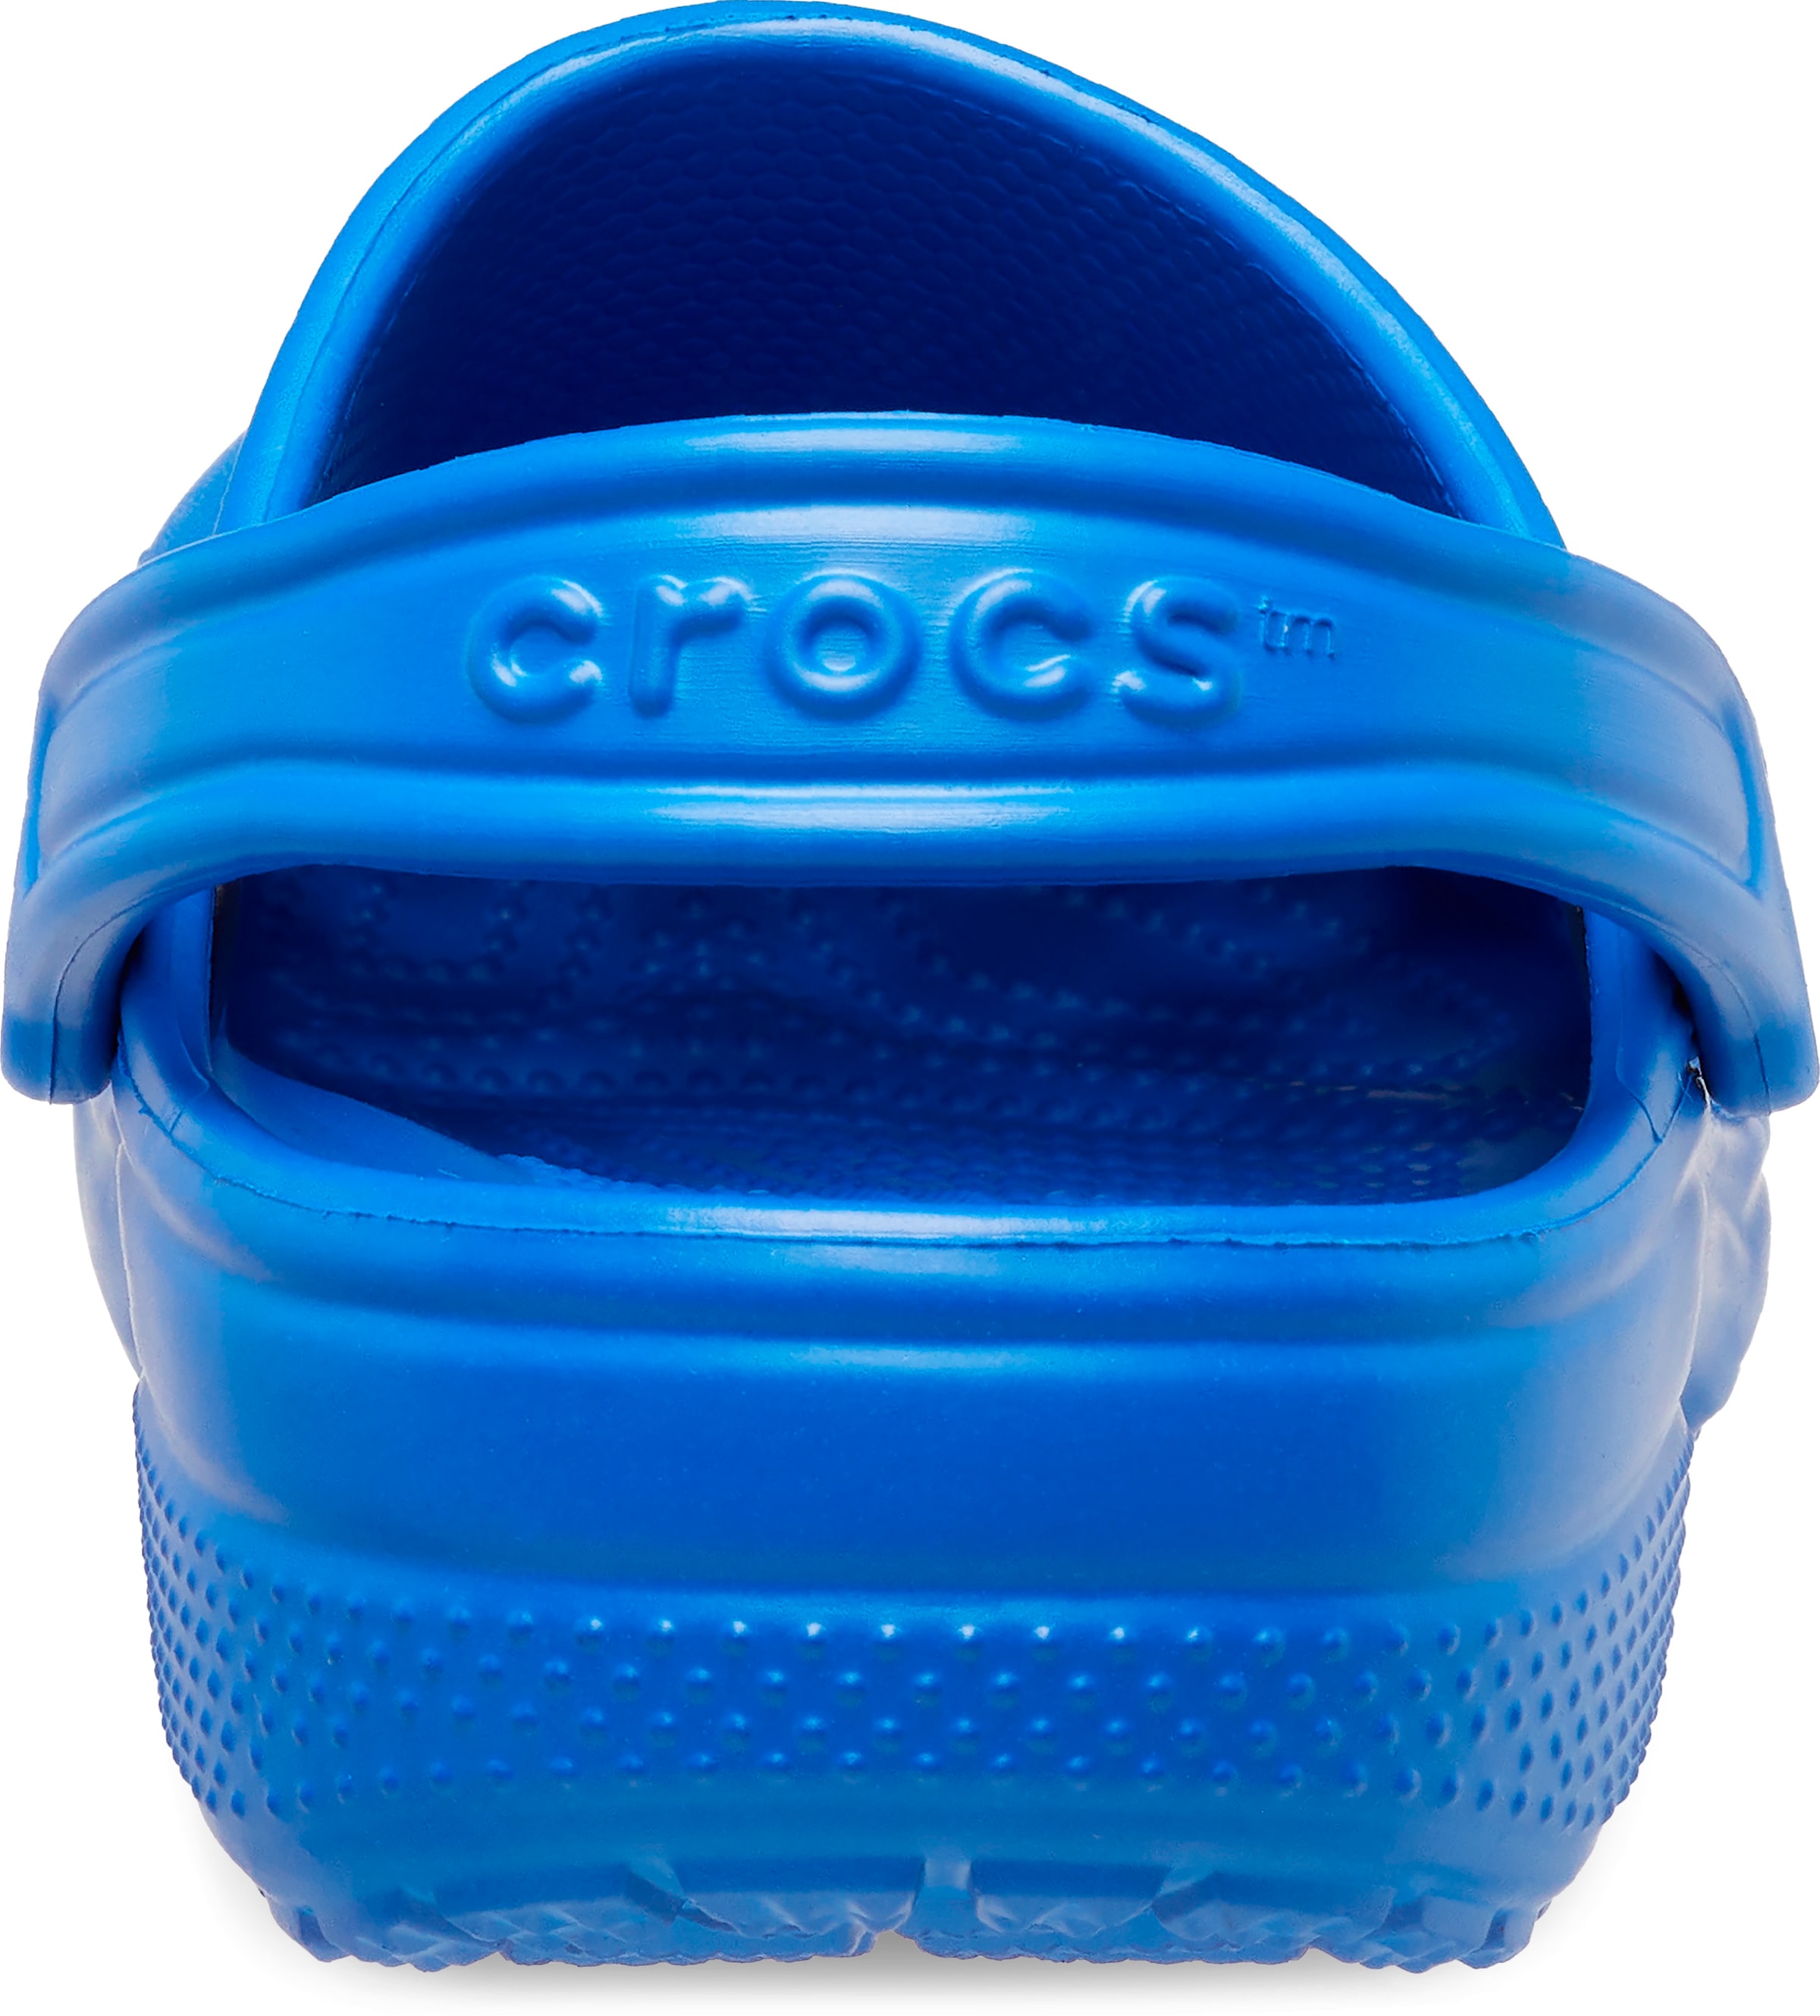 Crocs Clog »Classic«, Sommerschuh, Gartenschuh, Poolslides, mit typischem Logo